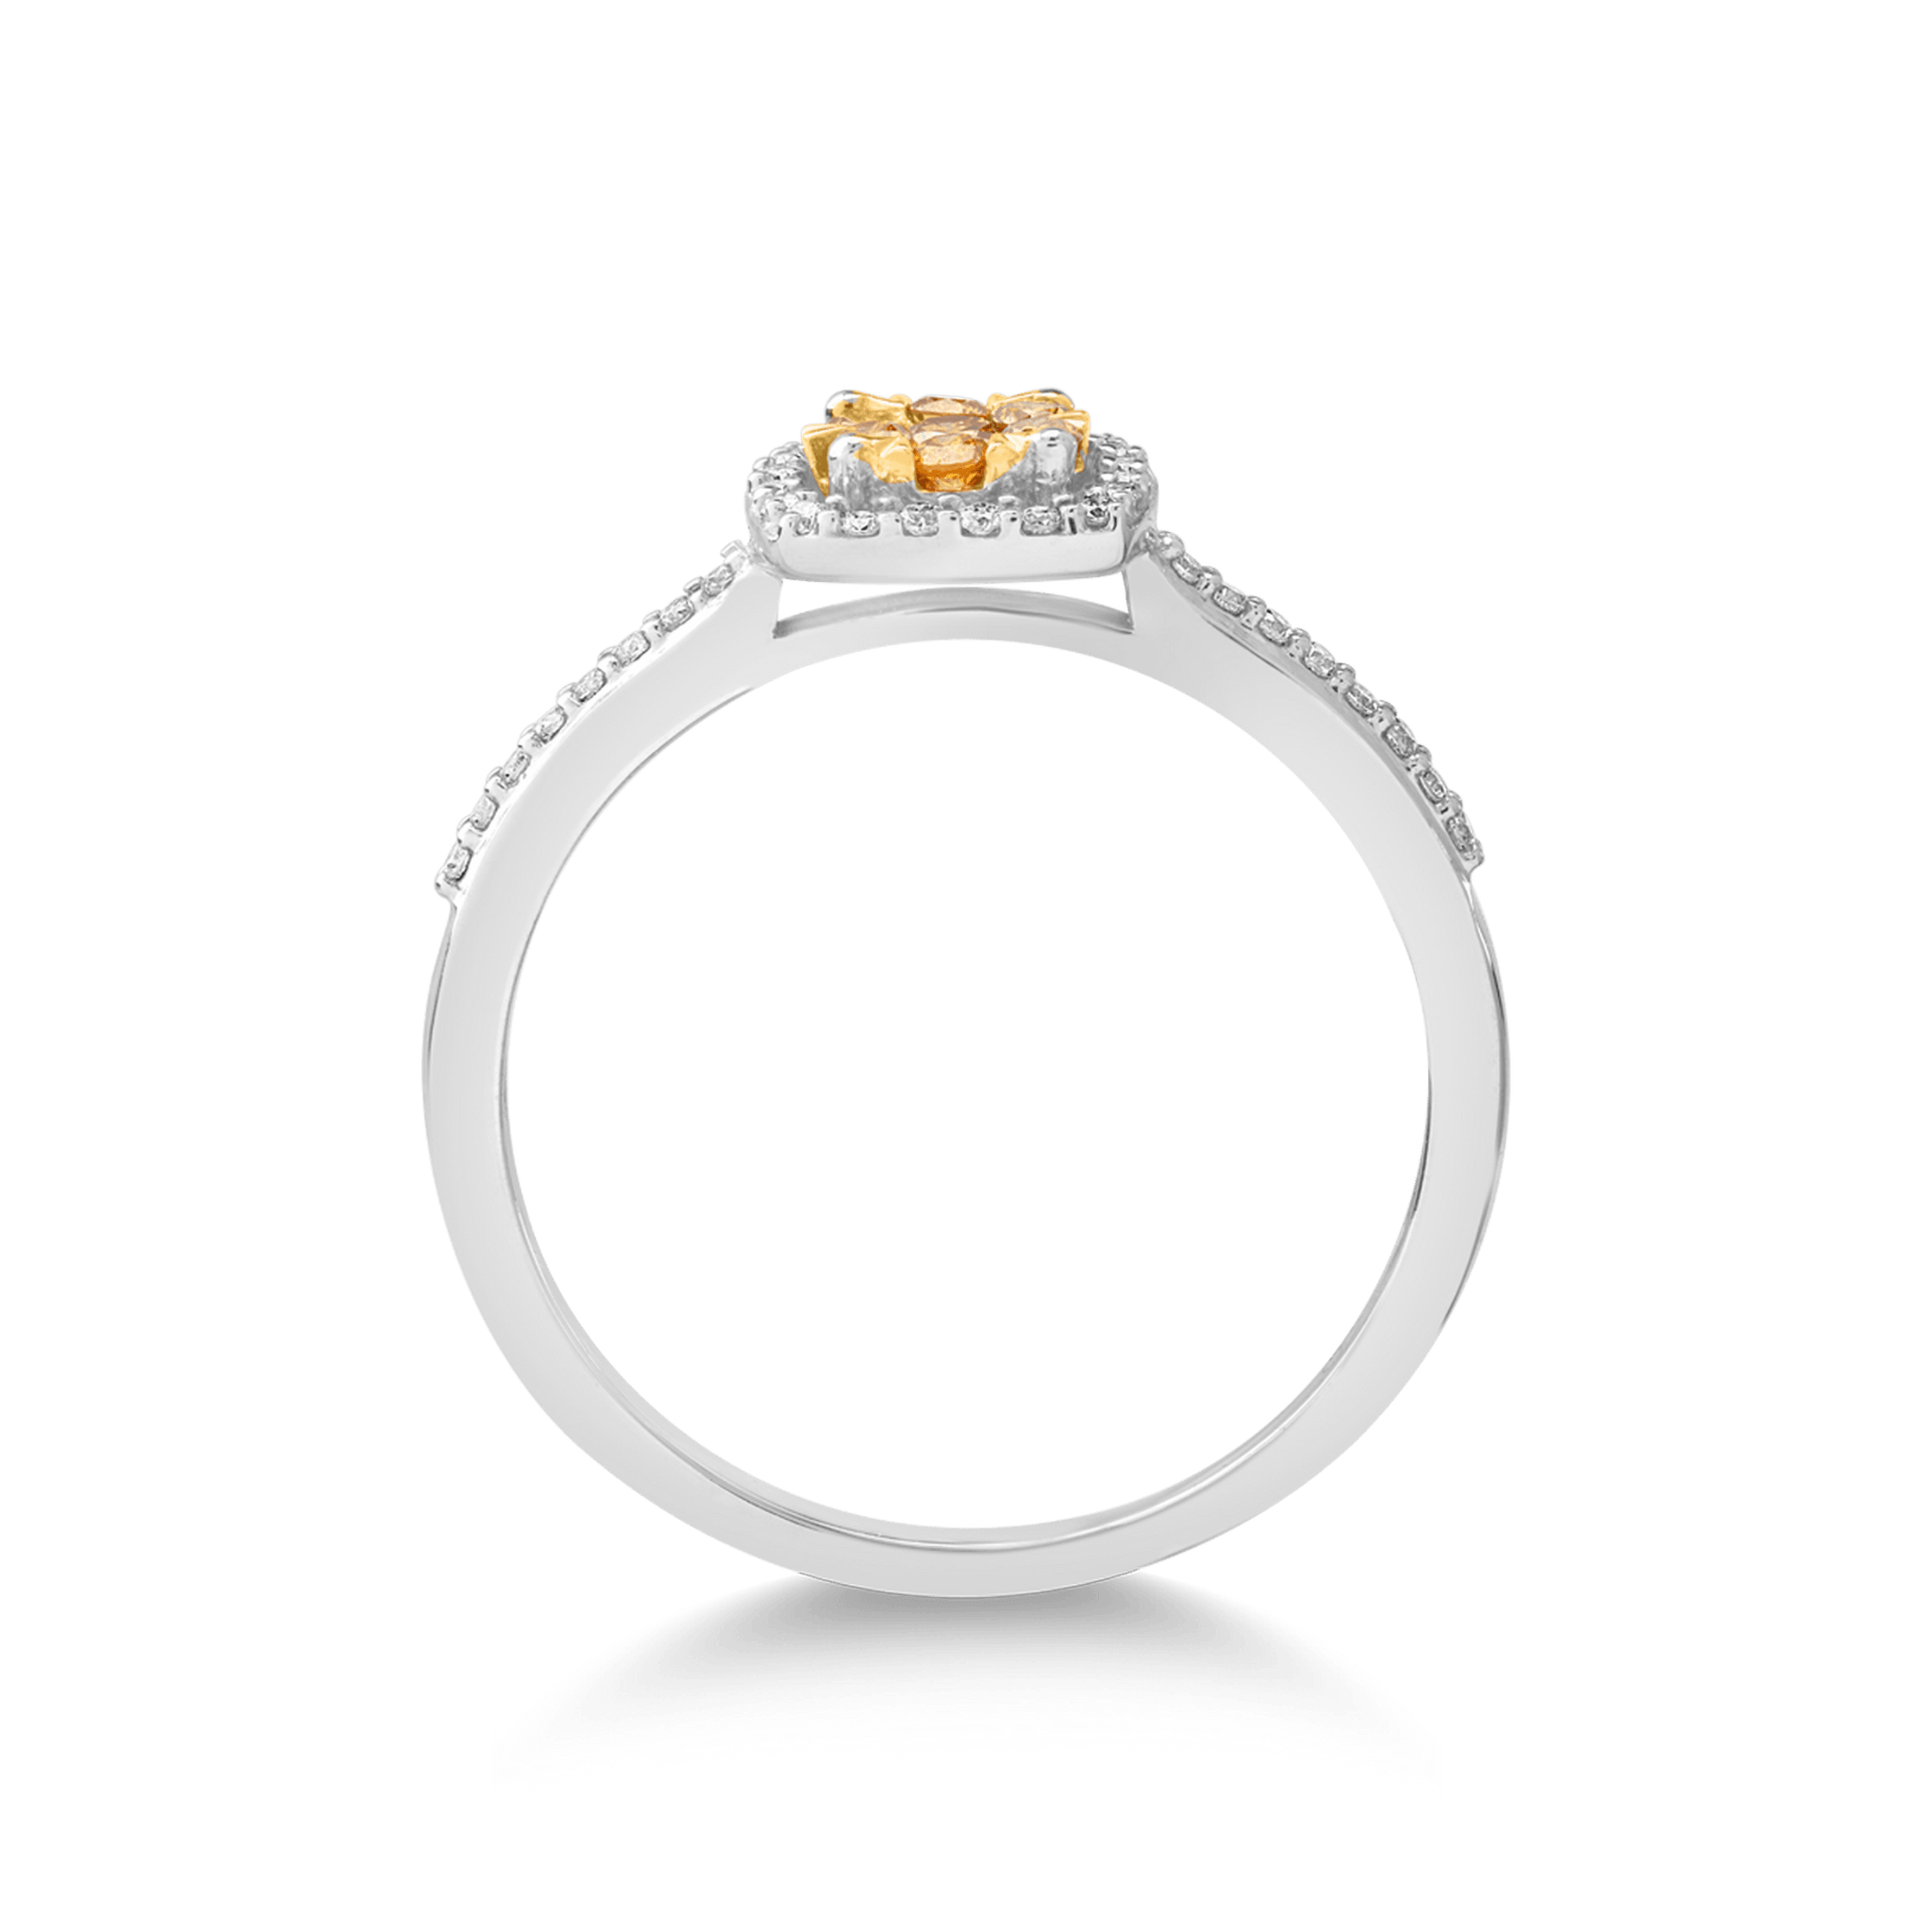 14 karátos fehér-sárga arany gyűrű 0.161 karátos díszes gyémántokkal és 0.128 karátos gyémántokkal